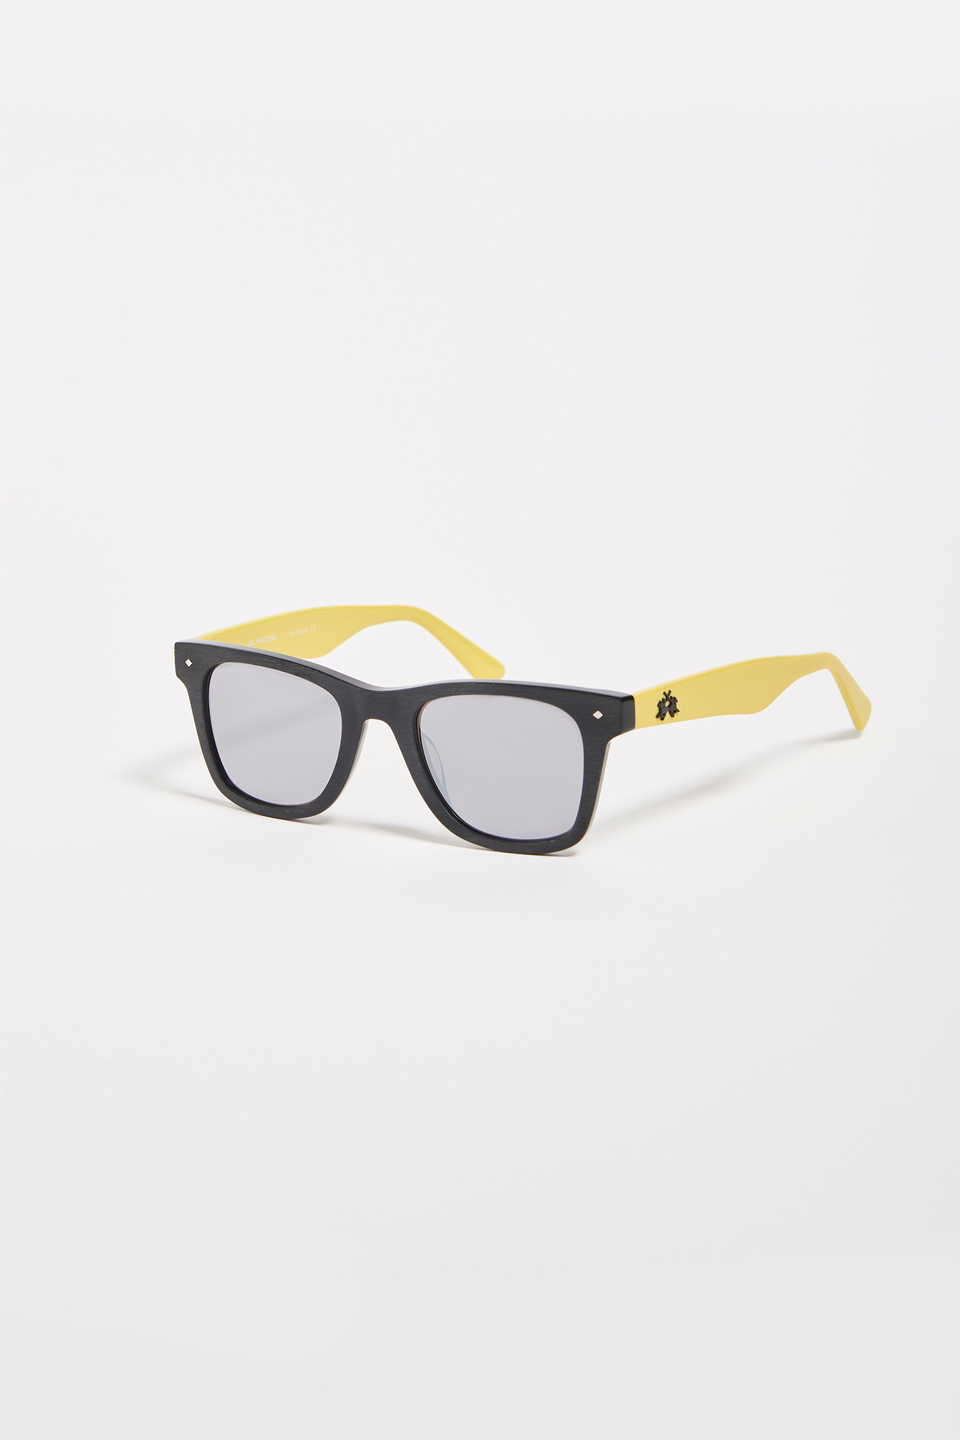 Unisex sunglasses | La Martina - Official Online Shop